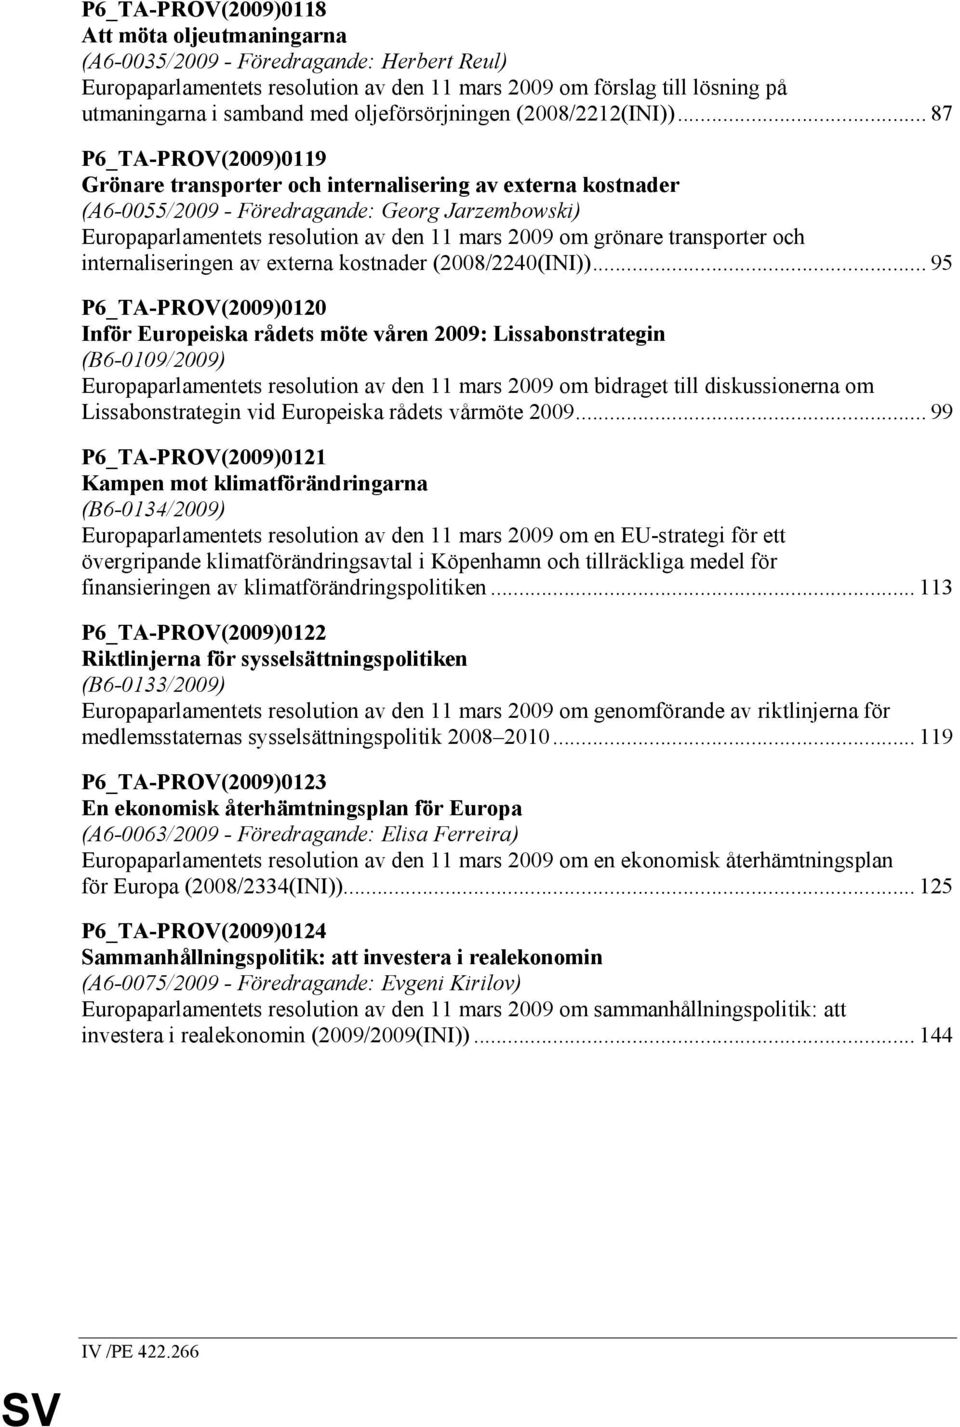 .. 87 P6_TA-PROV(2009)0119 Grönare transporter och internalisering av externa kostnader (A6-0055/2009 - Föredragande: Georg Jarzembowski) Europaparlamentets resolution av den 11 mars 2009 om grönare